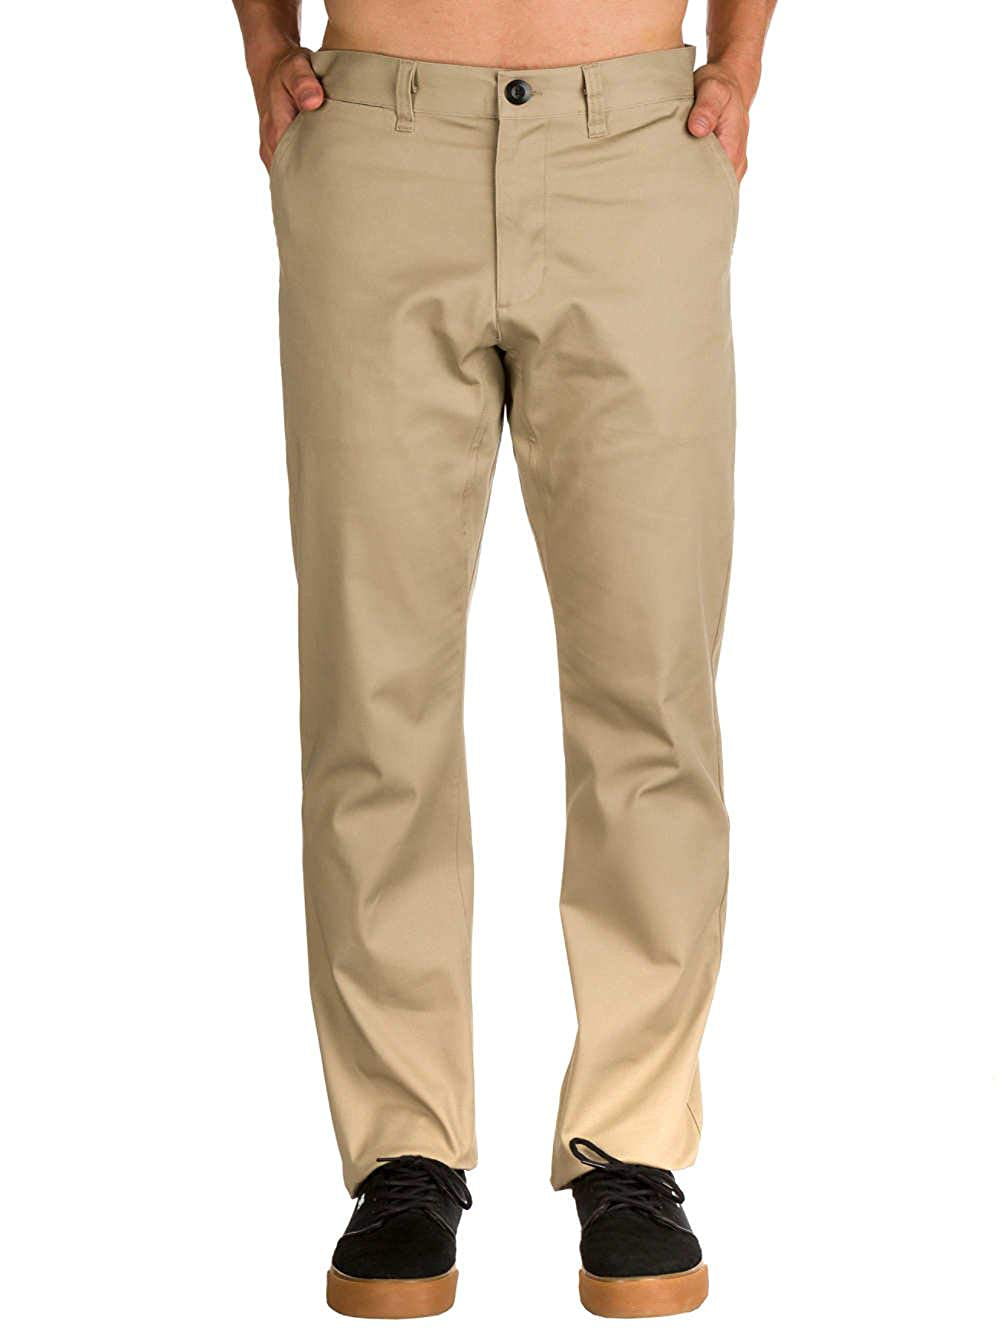 Beugel Arctic Waardig Nike SB Flex Icon Chino Skate Pants, Khaki, 36/32 - Walmart.com